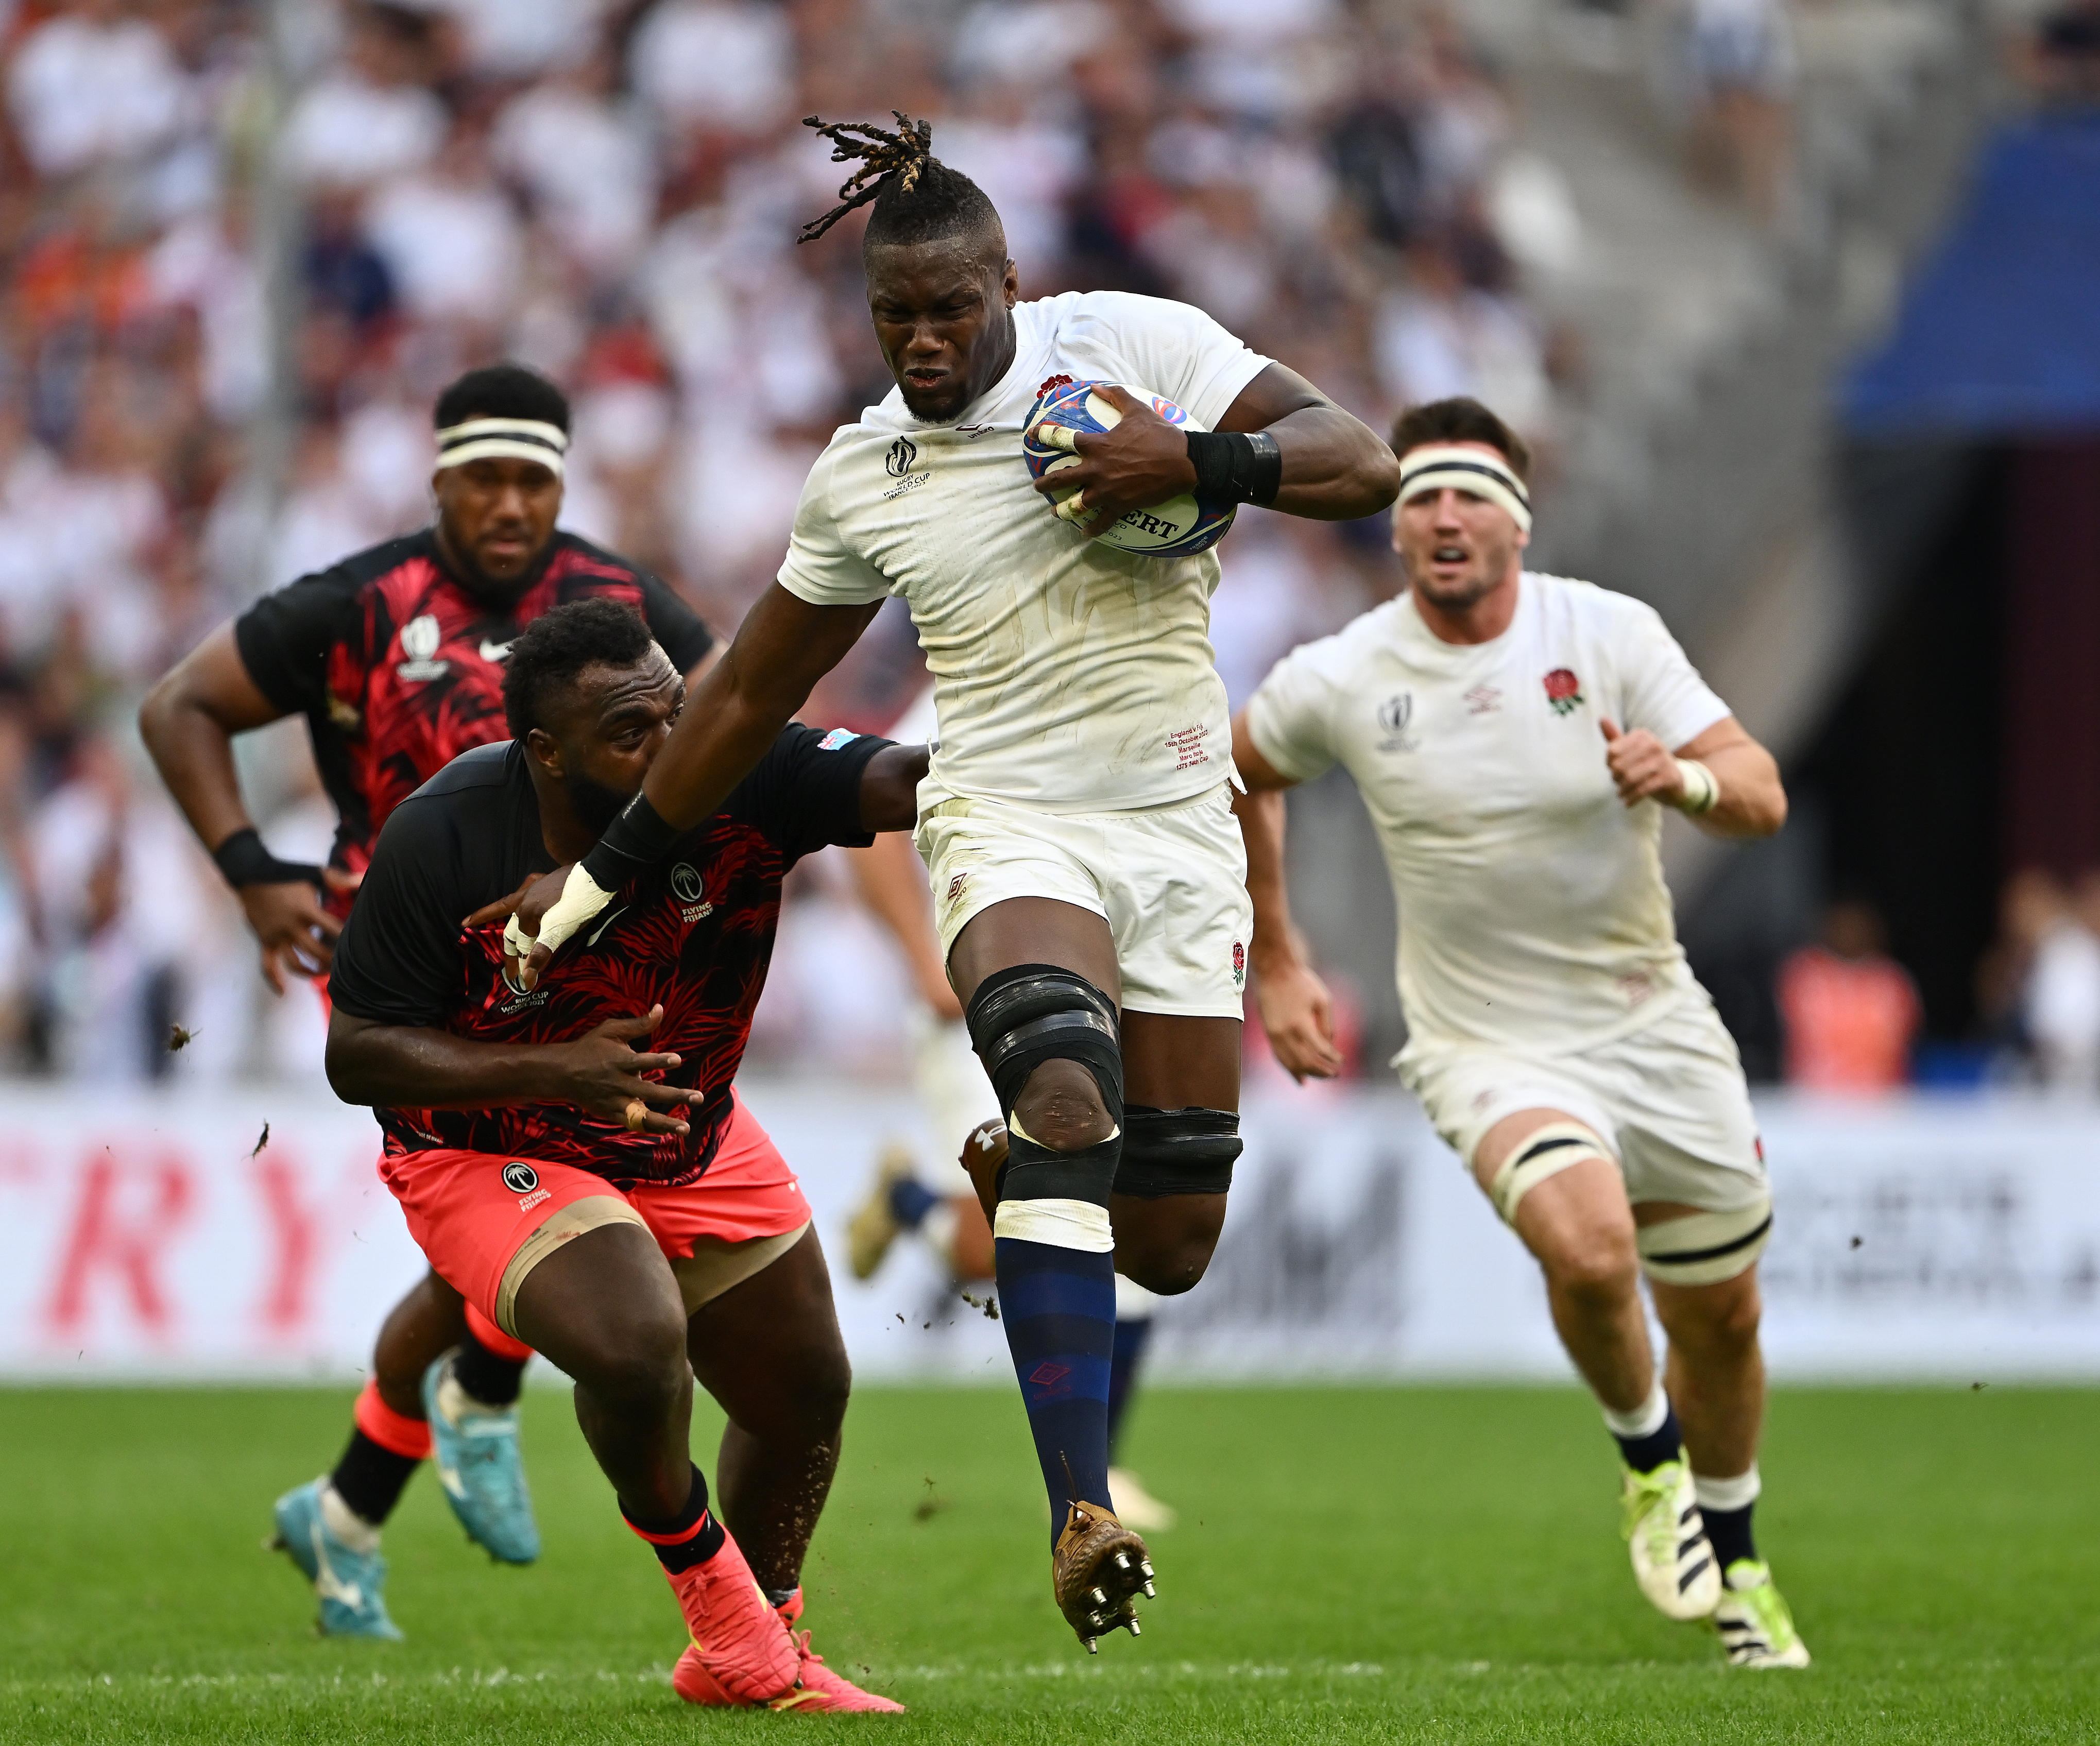 England v Fiji: Quarter Final - Rugby World Cup France 2023